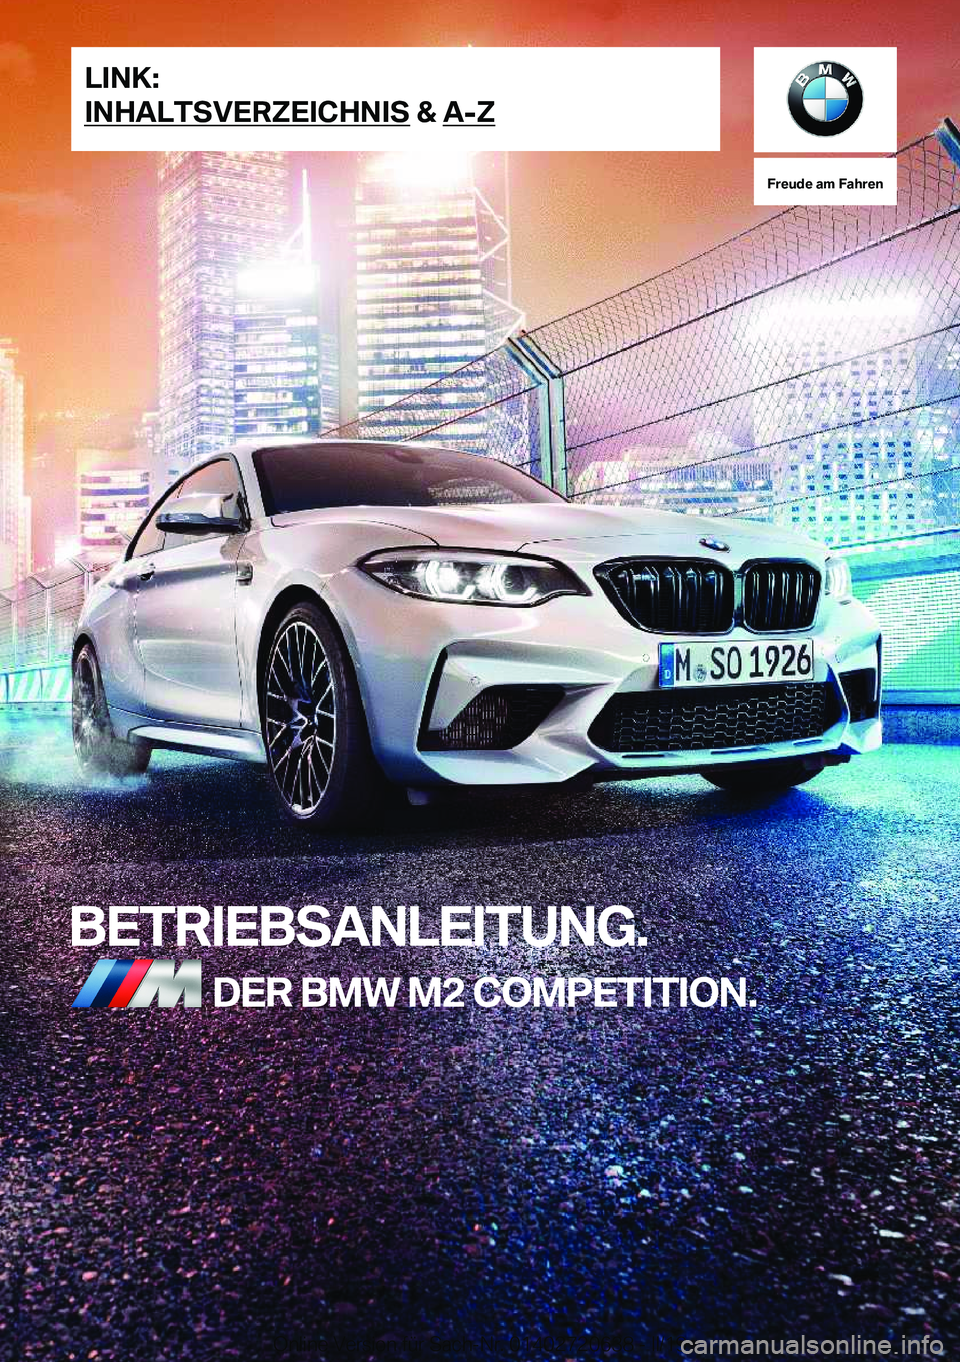 BMW M2 2020  Betriebsanleitungen (in German) �F�r�e�u�d�e��a�m��F�a�h�r�e�n
�B�E�T�R�I�E�B�S�A�N�L�E�I�T�U�N�G�.�D�E�R��B�M�W��M�2��C�O�M�P�E�T�I�T�I�O�N�.�L�I�N�K�:
�I�N�H�A�L�T�S�V�E�R�;�E�I�C�H�N�I�S��&��A�-�;�O�n�l�i�n�e��V�e�r�s�i�o